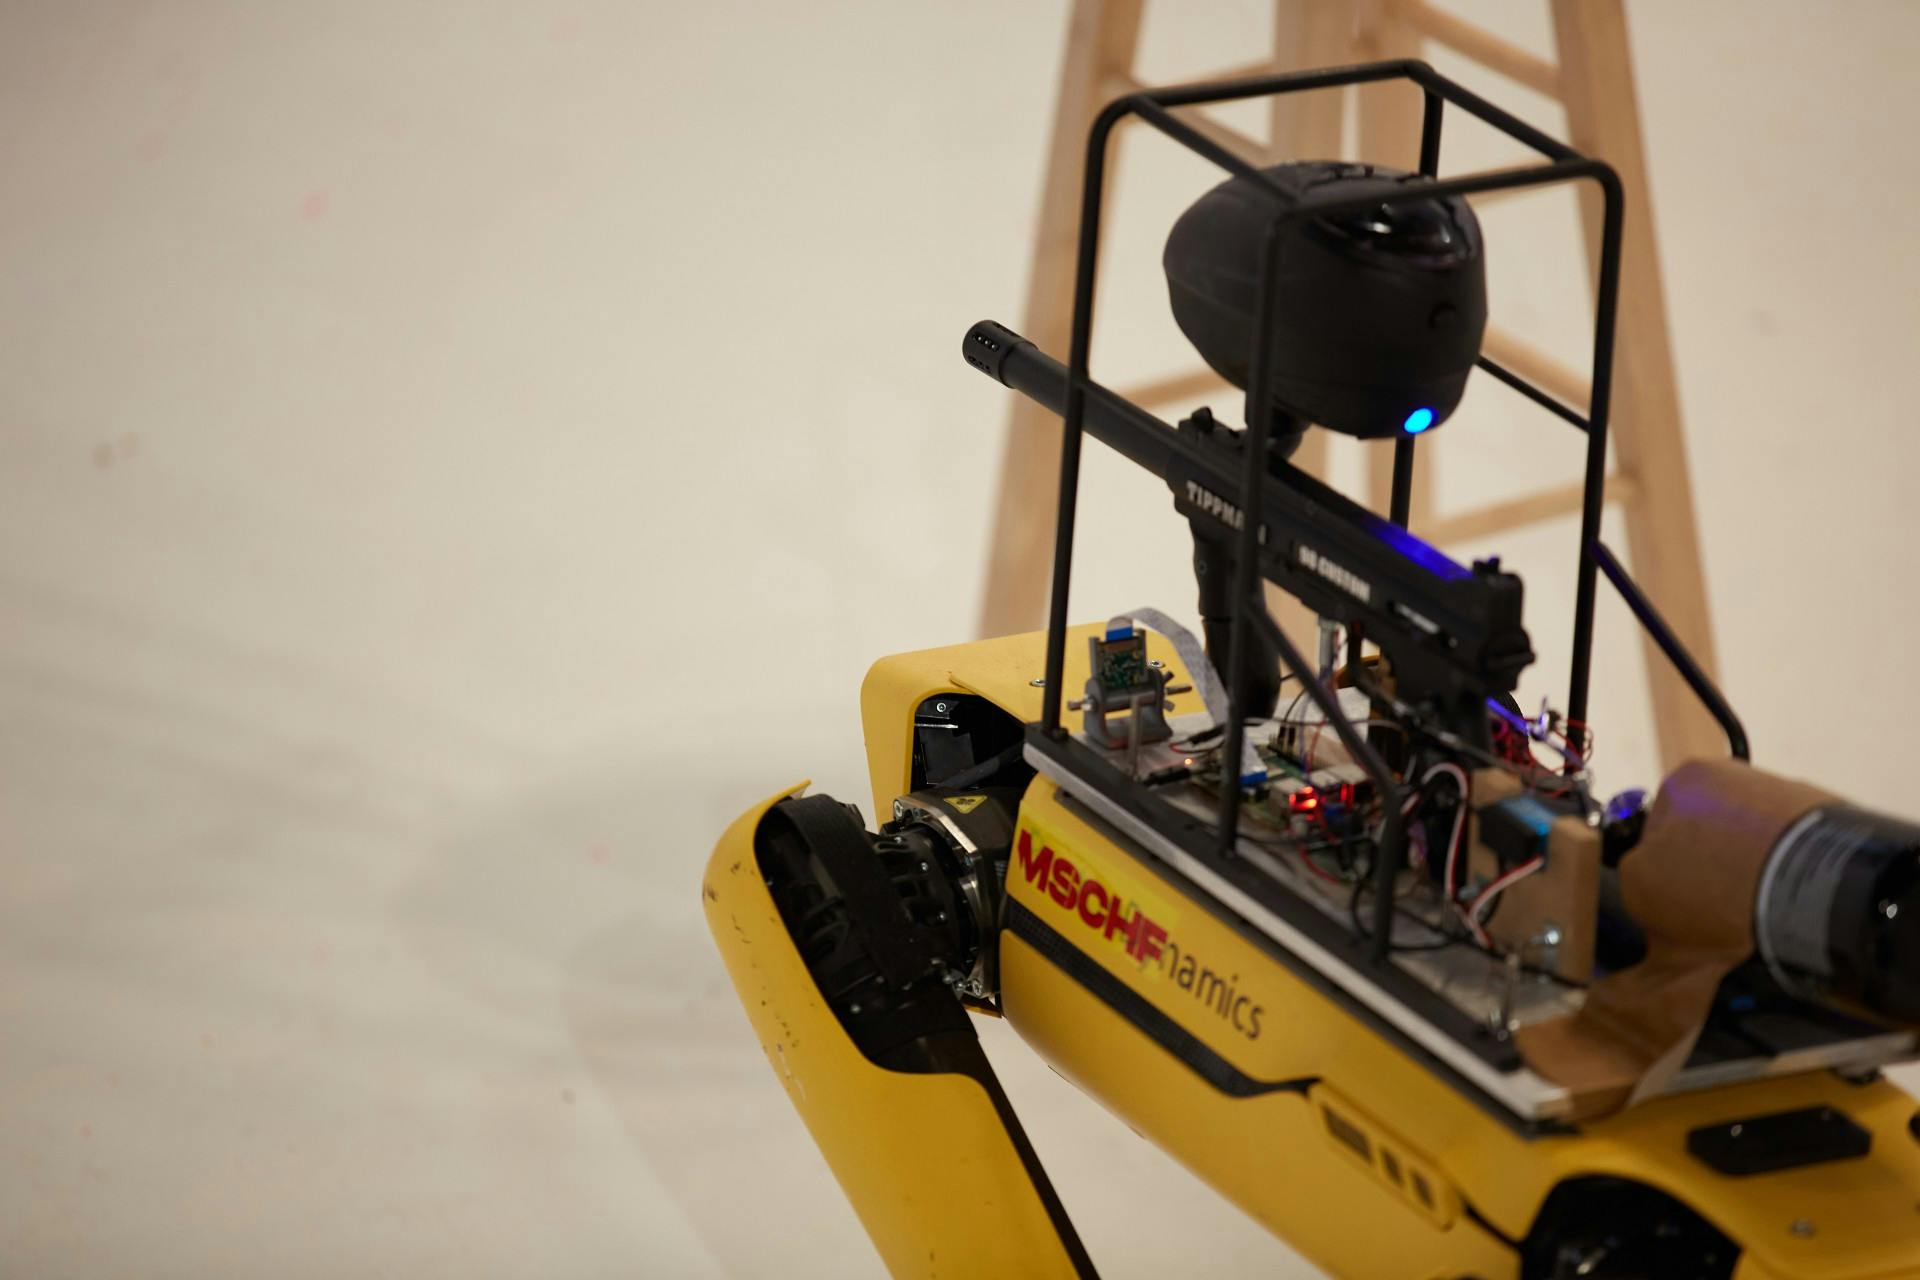 A Spot robot with a paintball gun attached